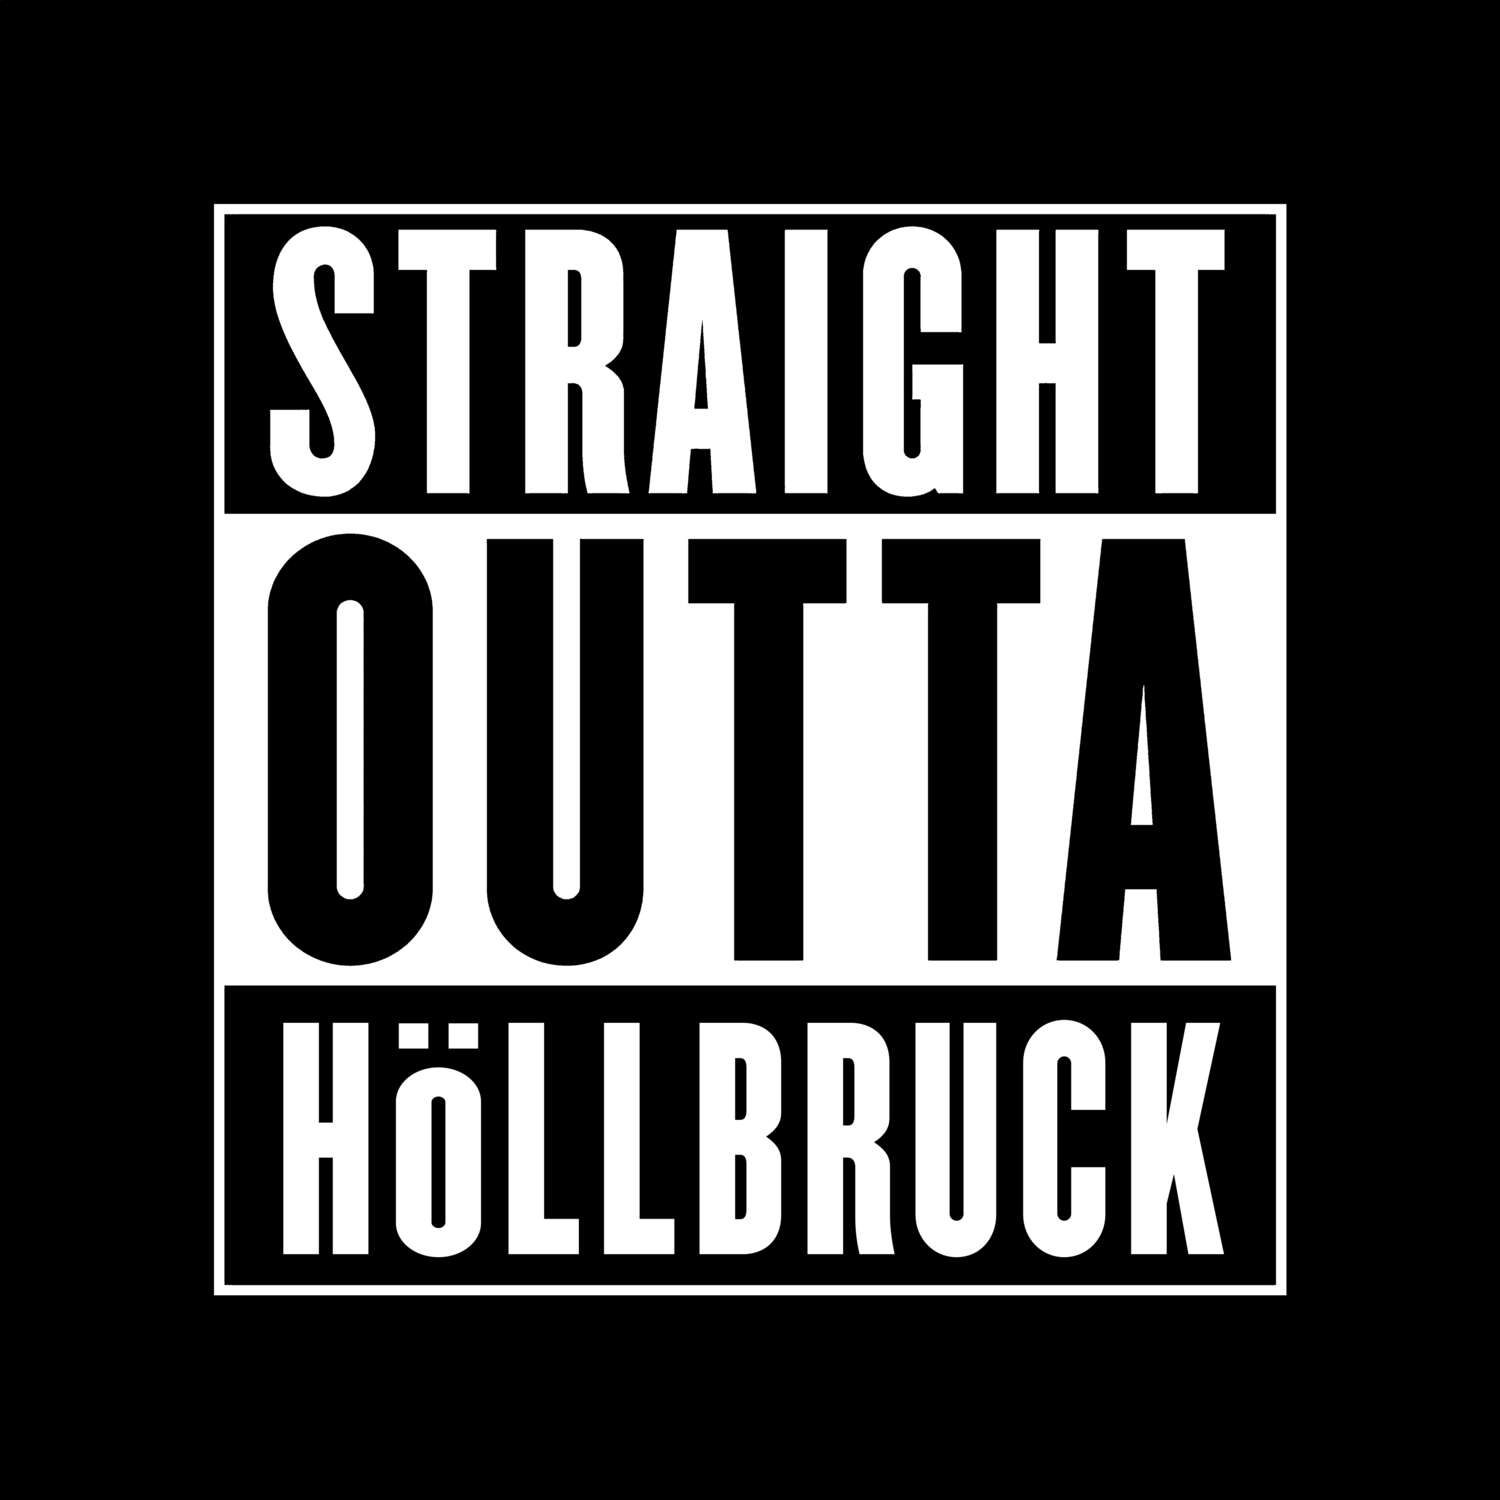 Höllbruck T-Shirt »Straight Outta«